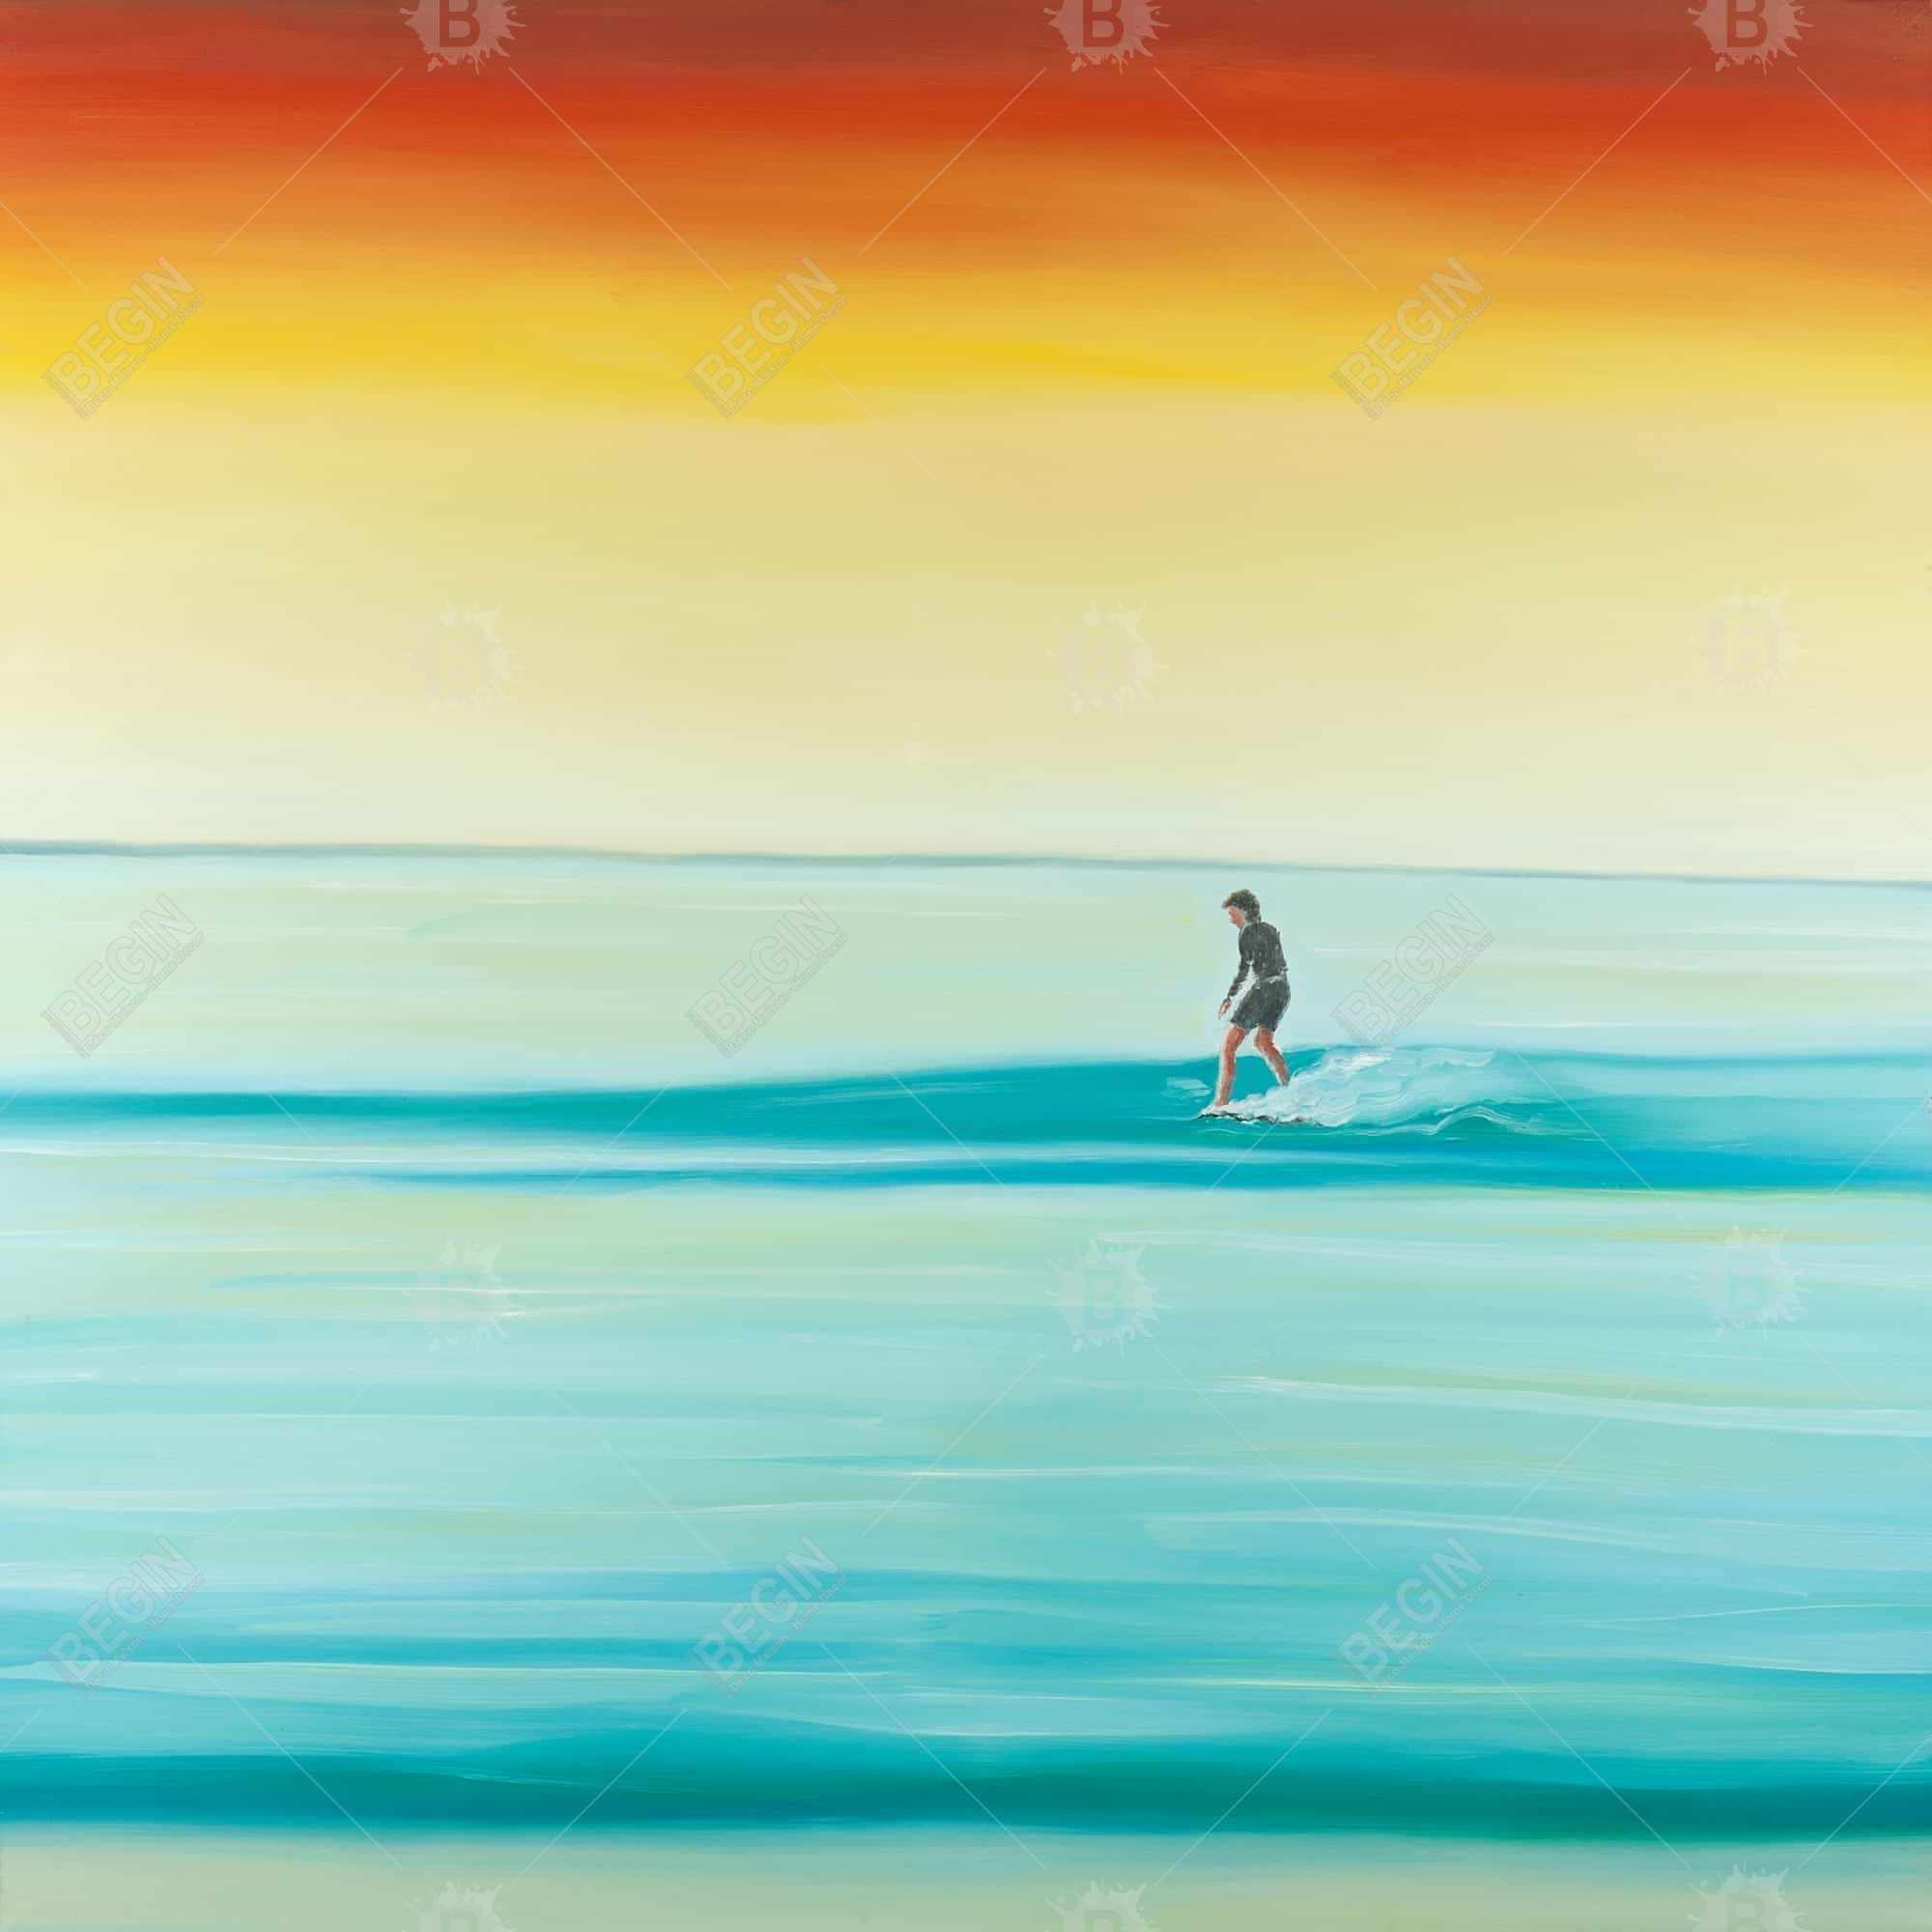 A surfer by dawn